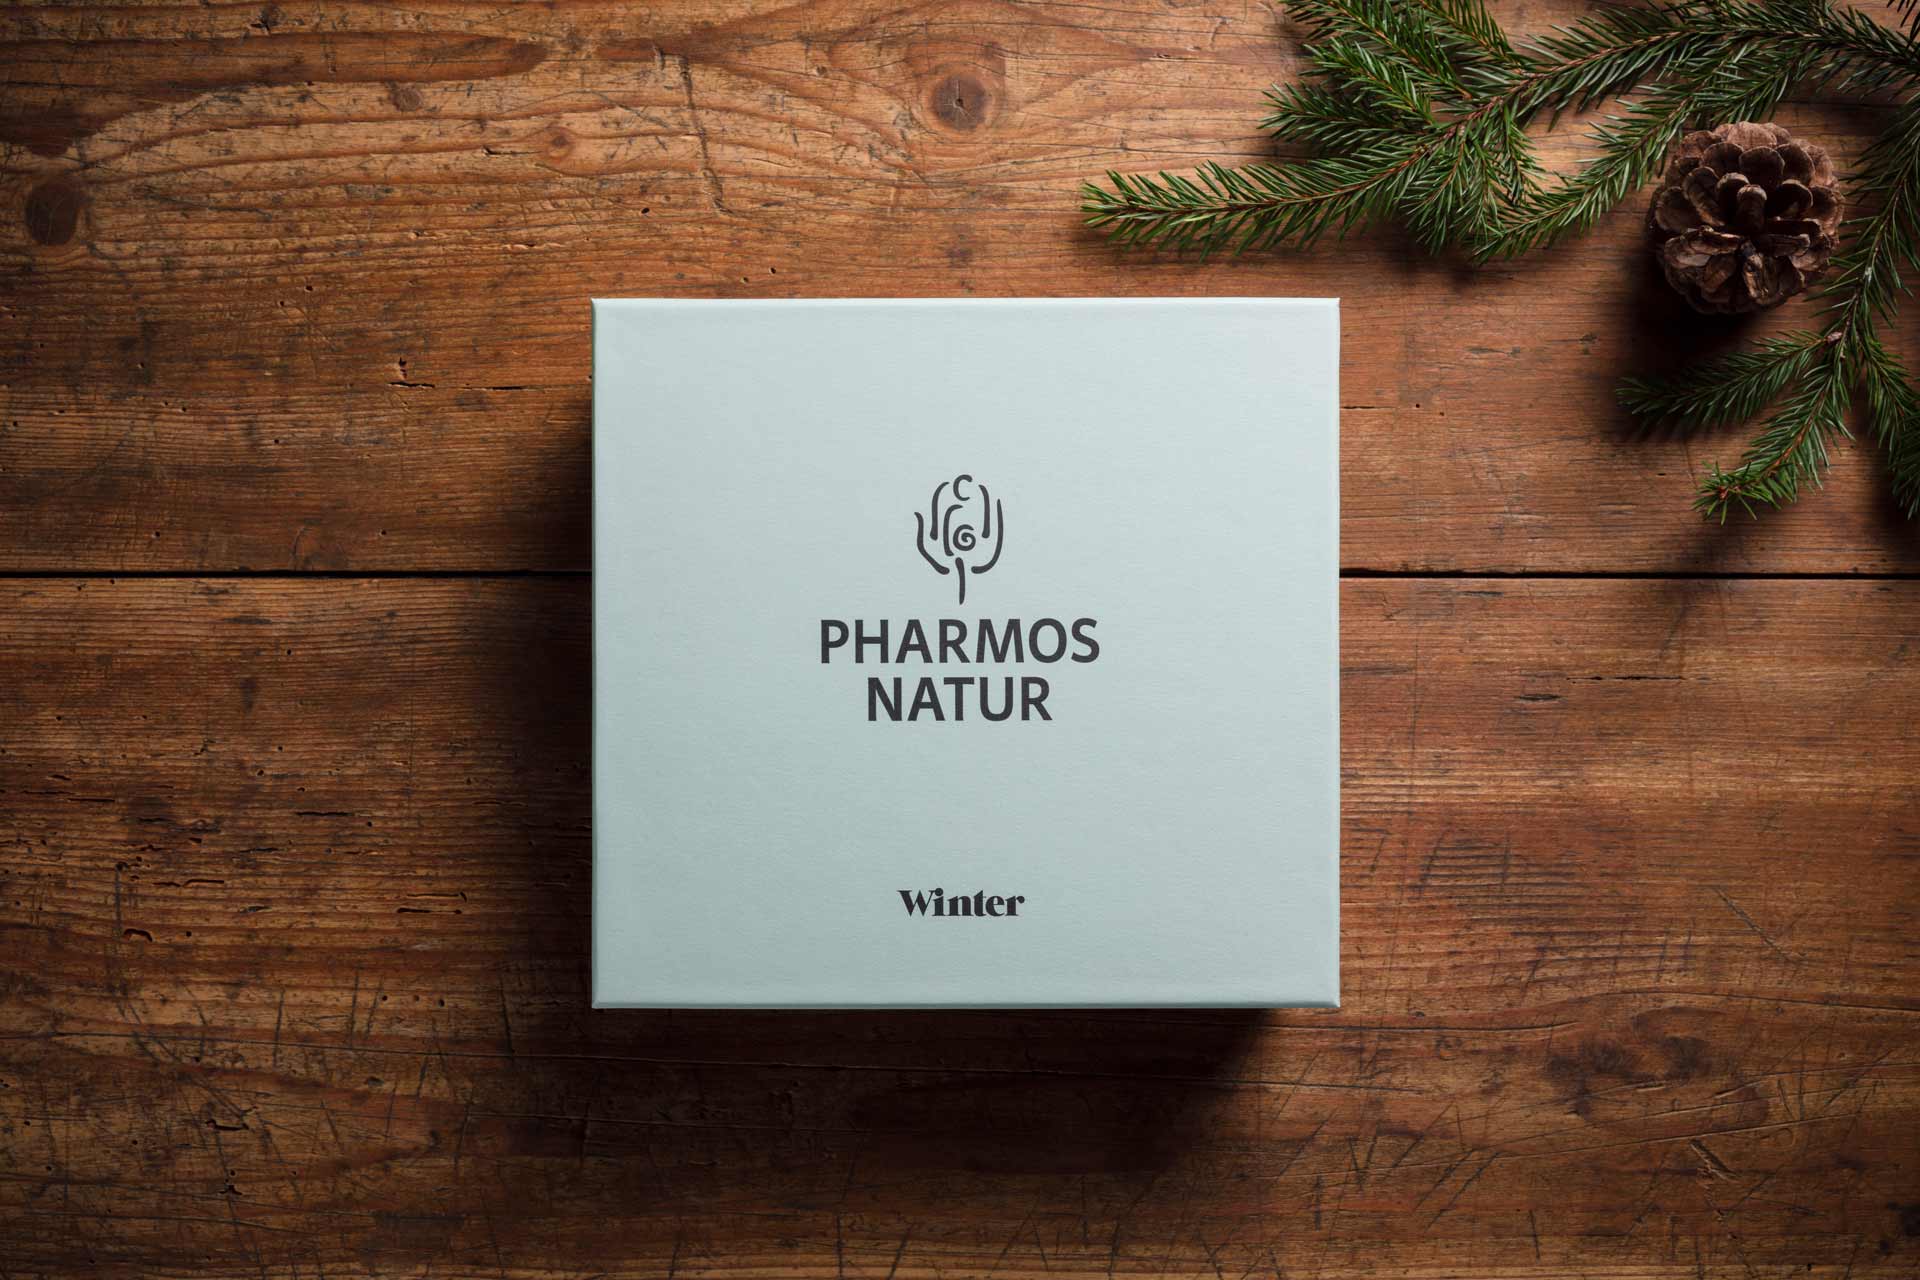 Packagingdesign und Fotokonzept für Pharmos Natur, Weihnachtsset, Verpackung, Weihnachten, Naturkosmetik, Design, Grafikdesign, Bernhard Hafele